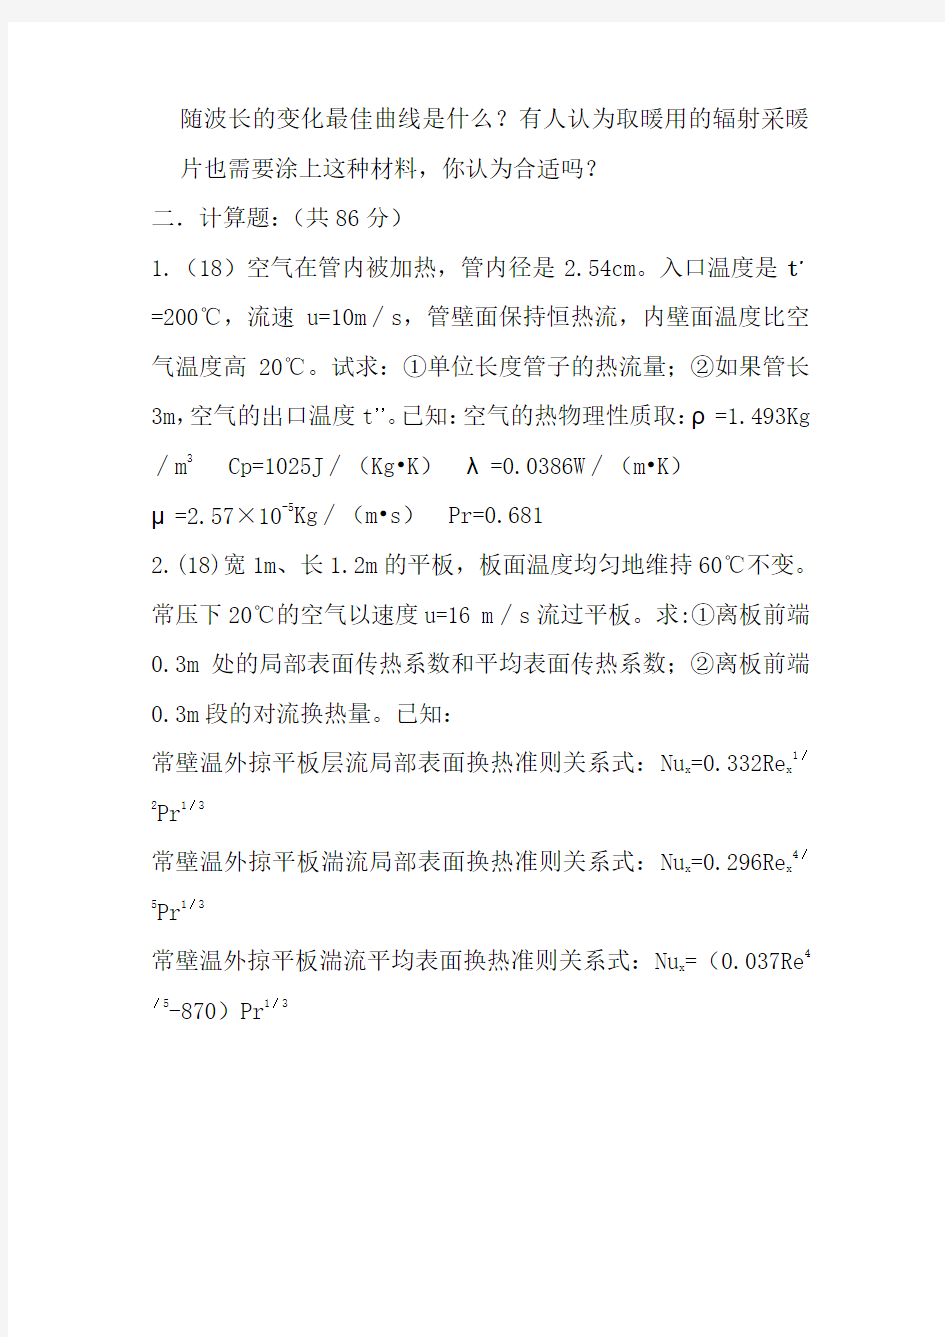 2008年上海理工大学传热学硕士研究生入学考试试题